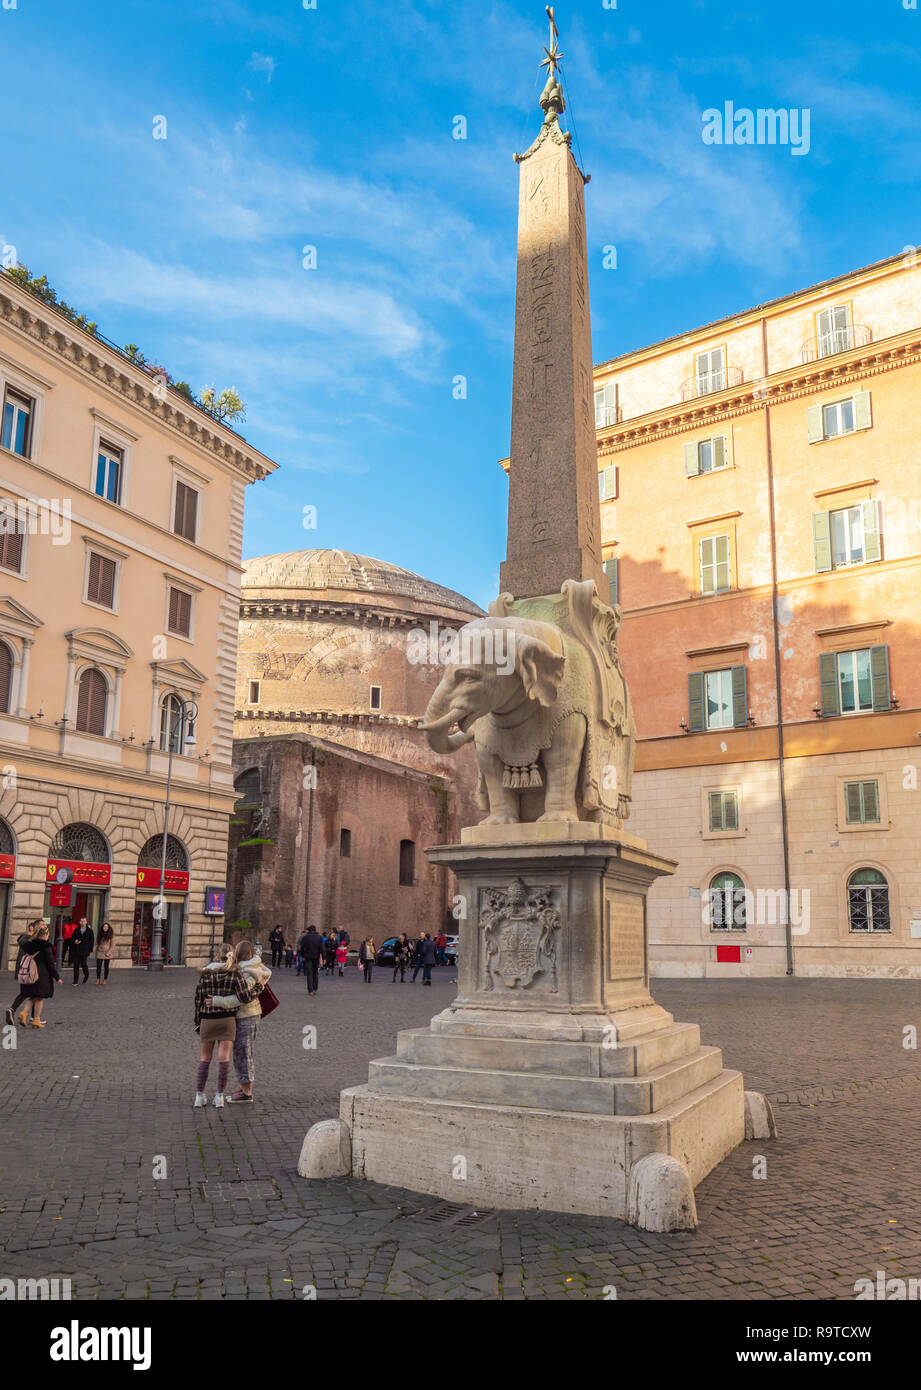 Rom (Italien) - Piazza Navona Platz, dem Pantheon, der Piazza Venezia mit Vittoriano und Weihnachtsbaum Spelacchio, während der Weihnachten benannt Stockfoto